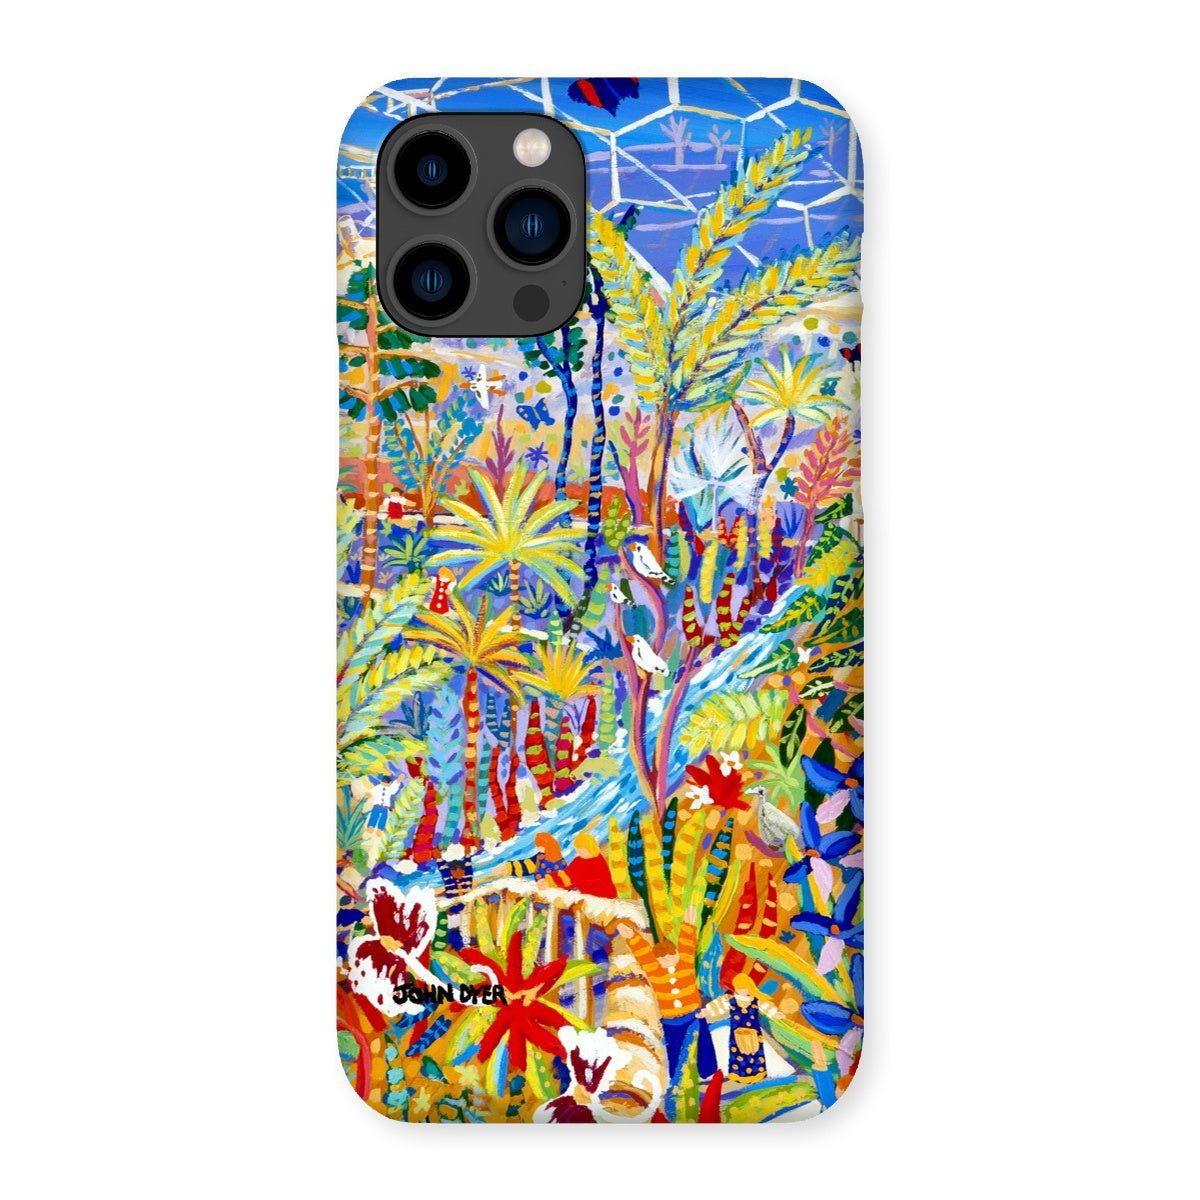 Snap Art Phone Case. Eden Project Rainforest. Artist John Dyer. Cornwall Art Gallery